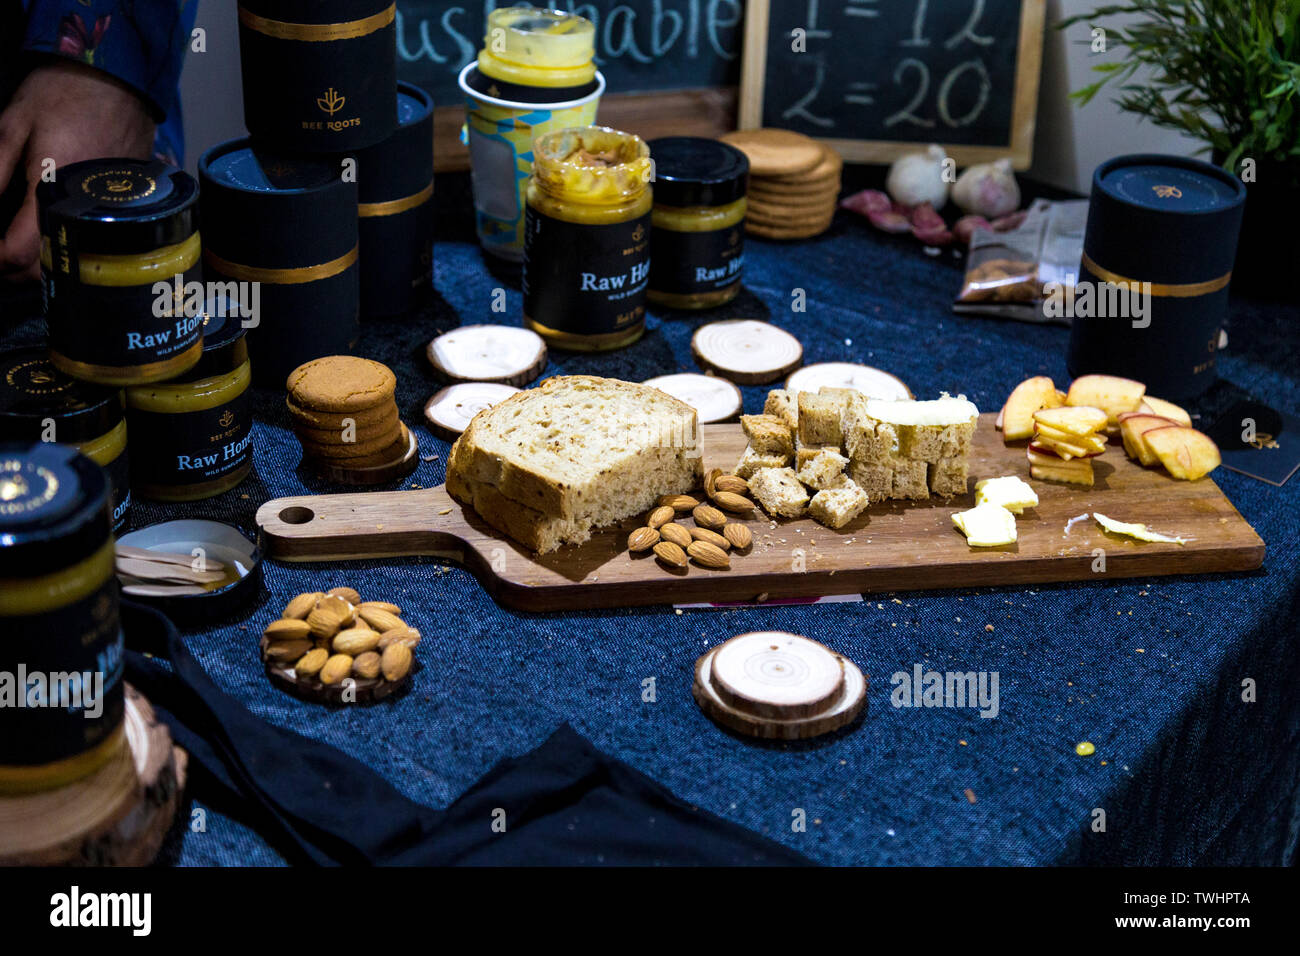 Soporte de la abeja de miel cruda (raíces), la tabla de cortar con pan, nueces y frutas, FesTeaVal 2019 a base de tabaco, Londres, Reino Unido. Foto de stock